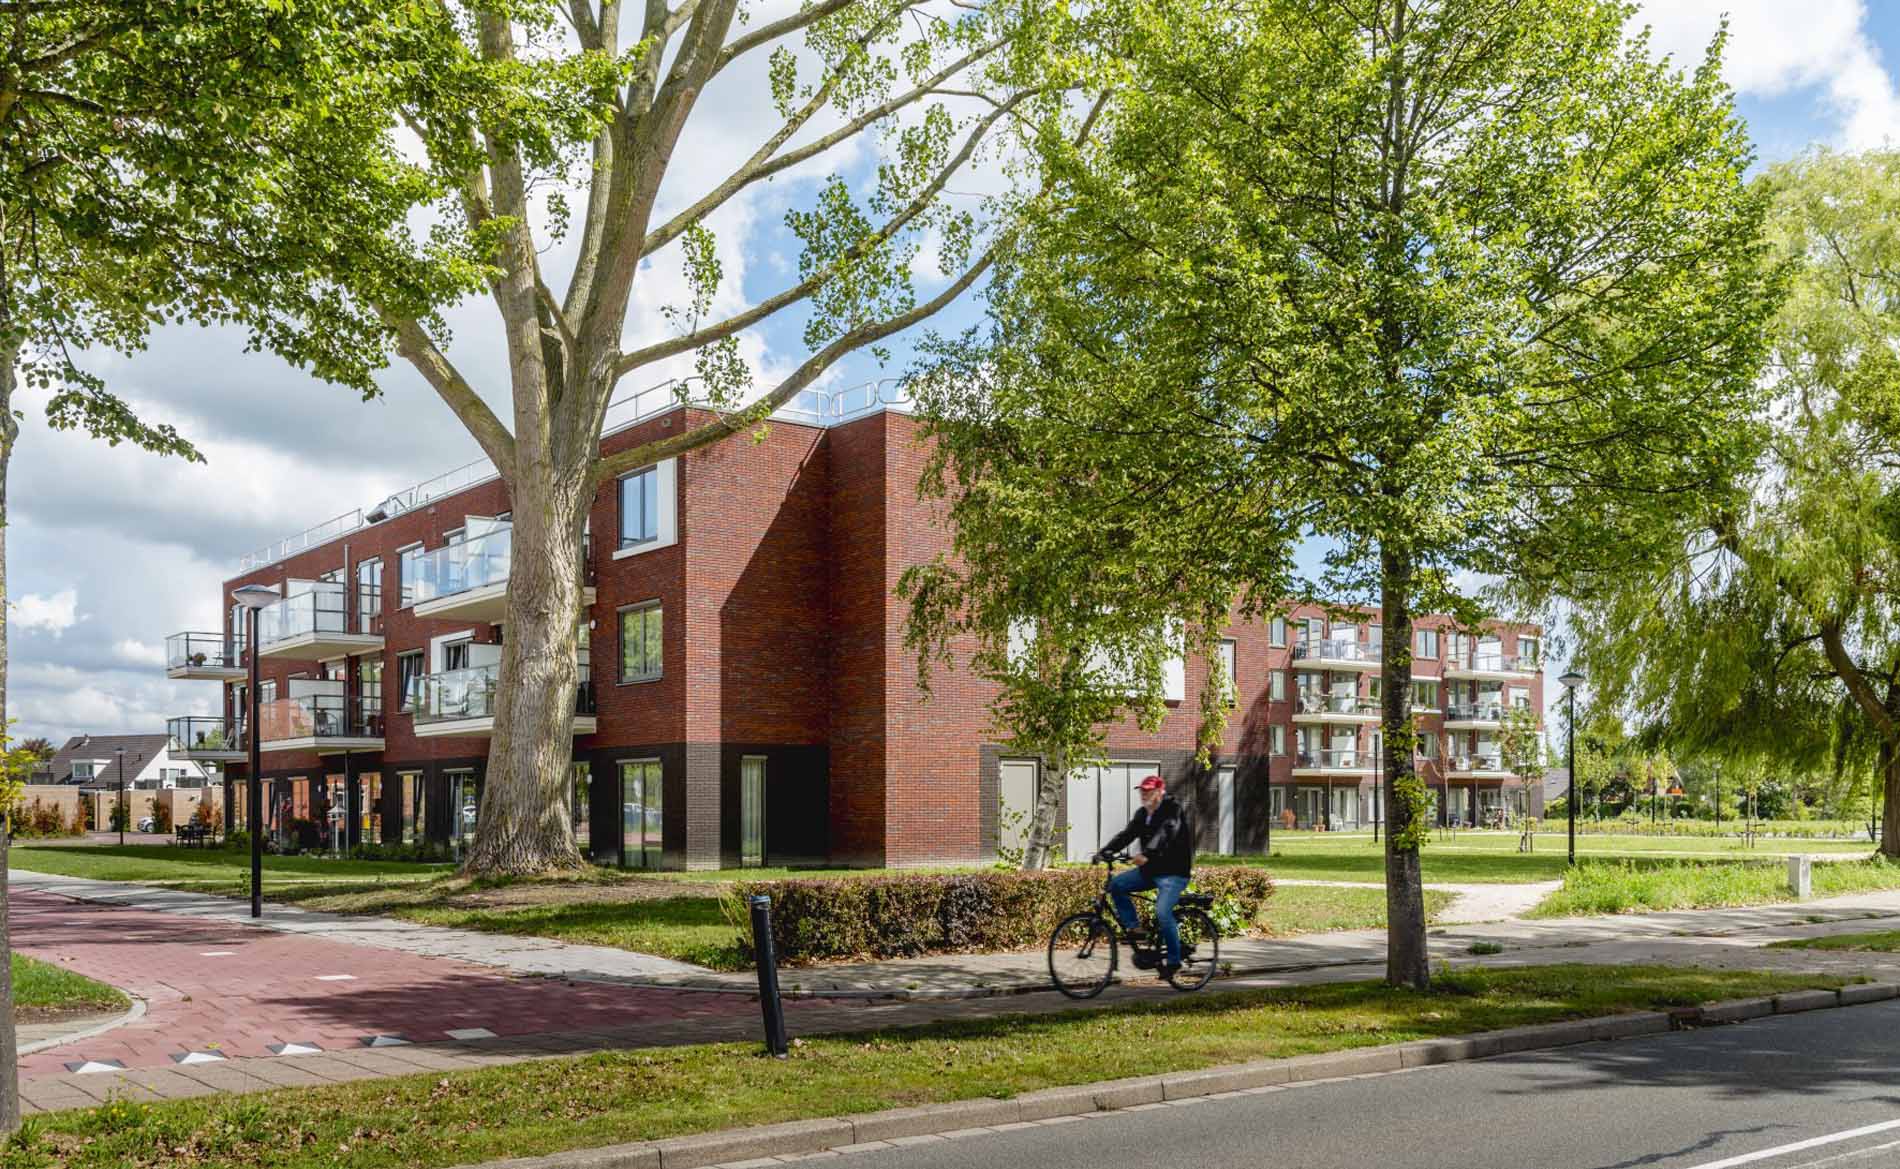 architect woonzorggebouw woonzorgcentrum bejaardenhuis verpleeghuis aanleunwoningen appartementen sociale huur architectuur Hugo Waard Heerhugowaard